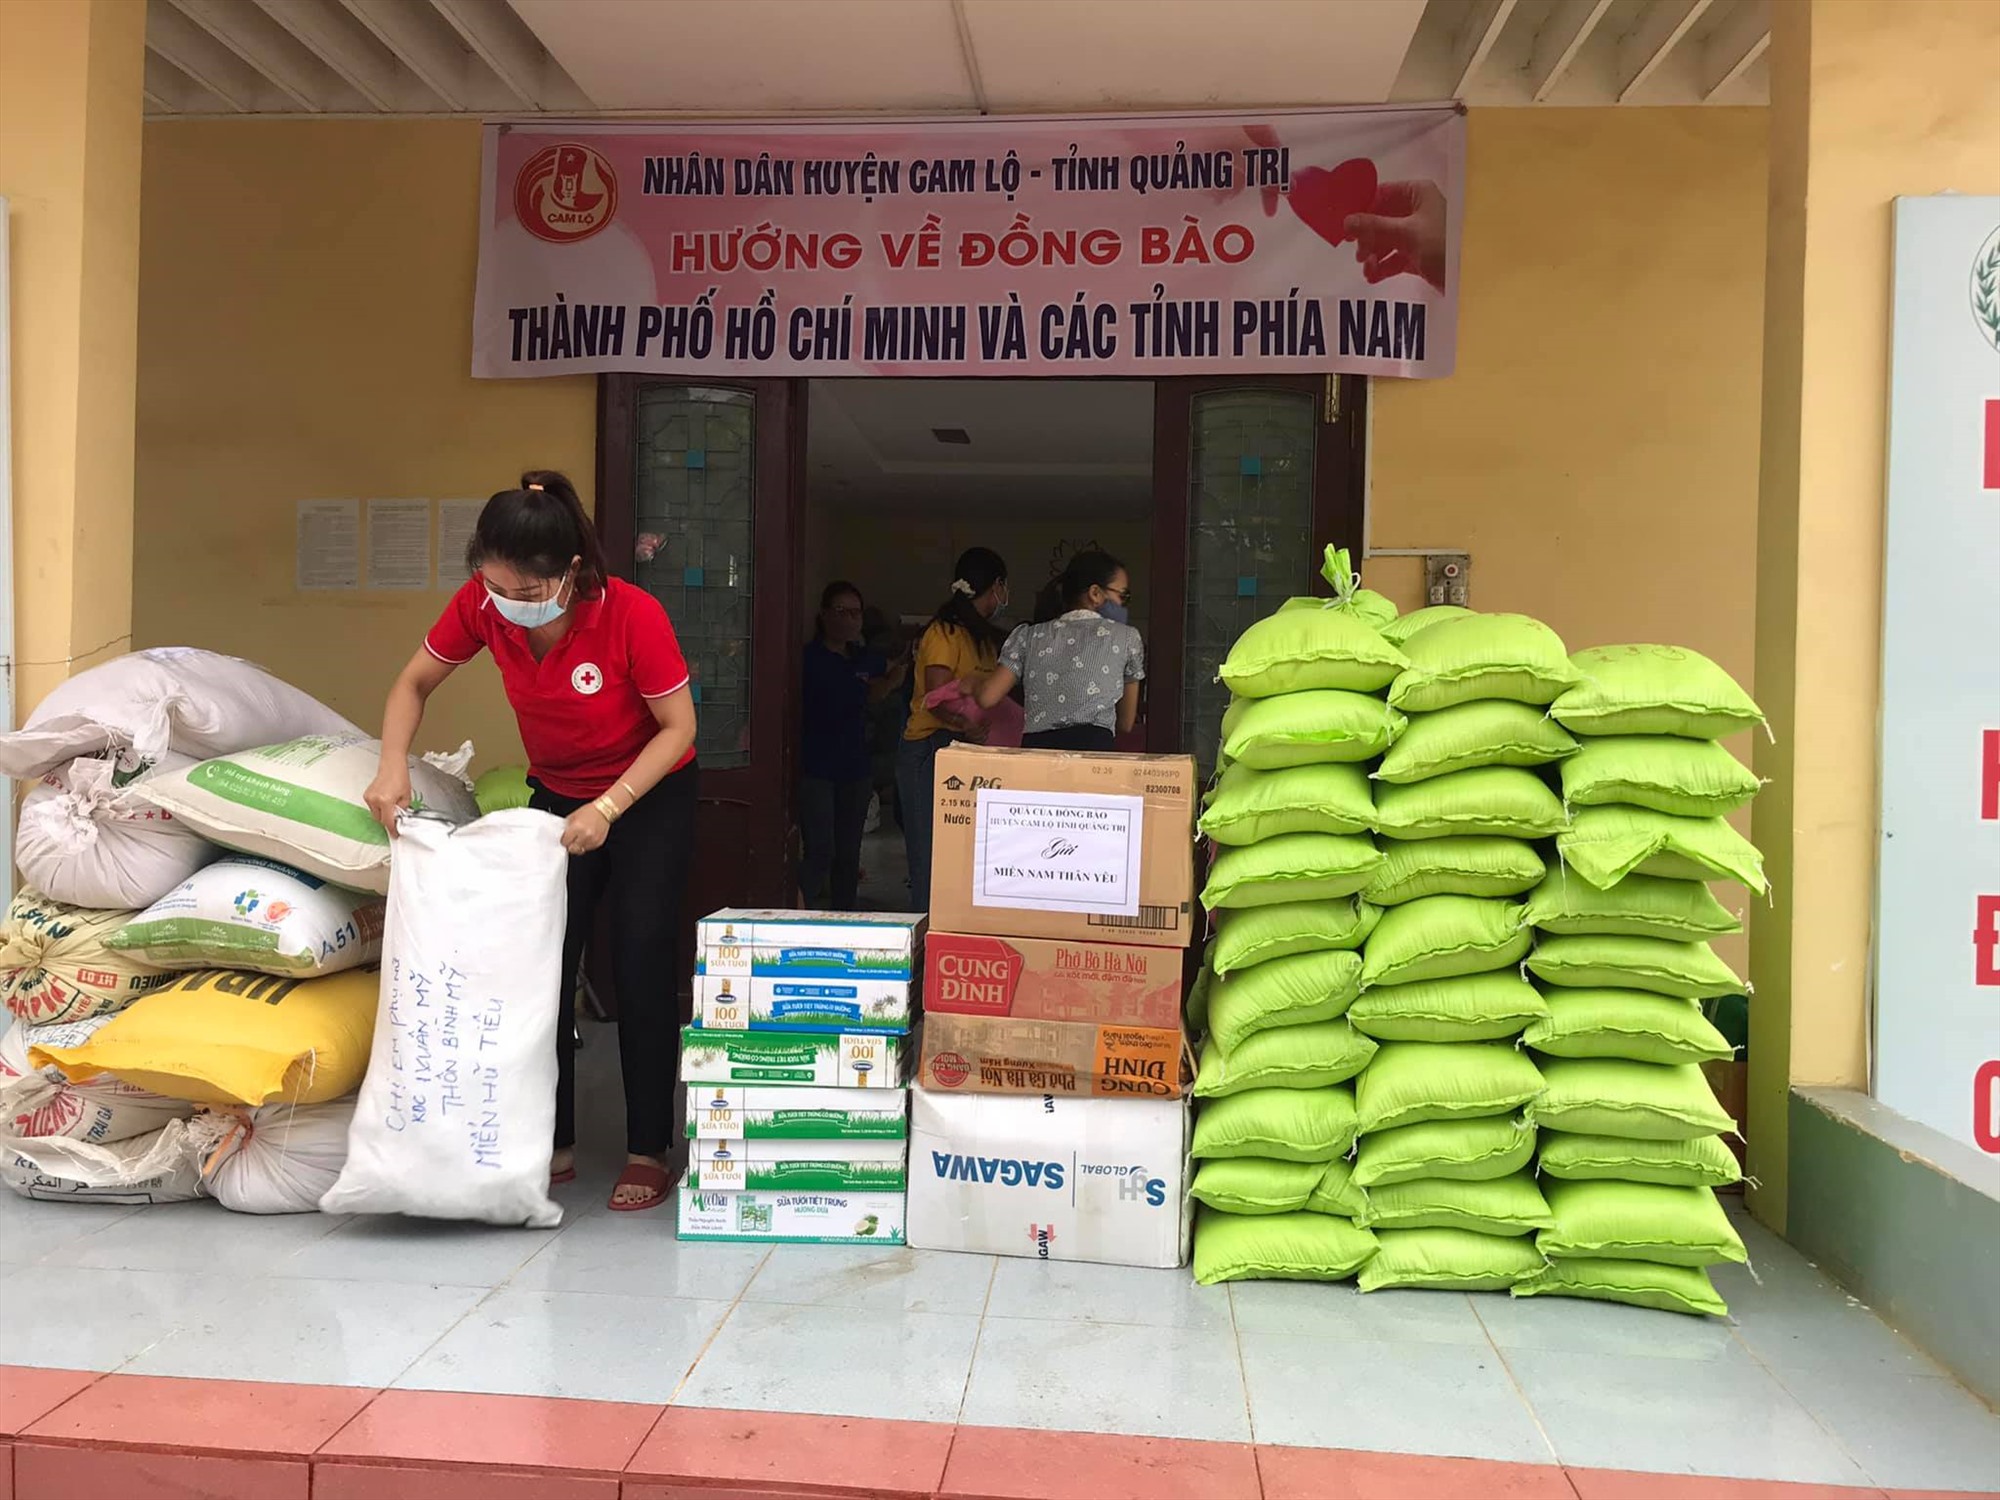 Huyện Cam Lộ đóng gói hàng hóa vận chuyển hỗ trợ Thành phố Hồ Chí Minh và các tỉnh phía Nam chống dịch - Ảnh: LÊ TRƯỜNG